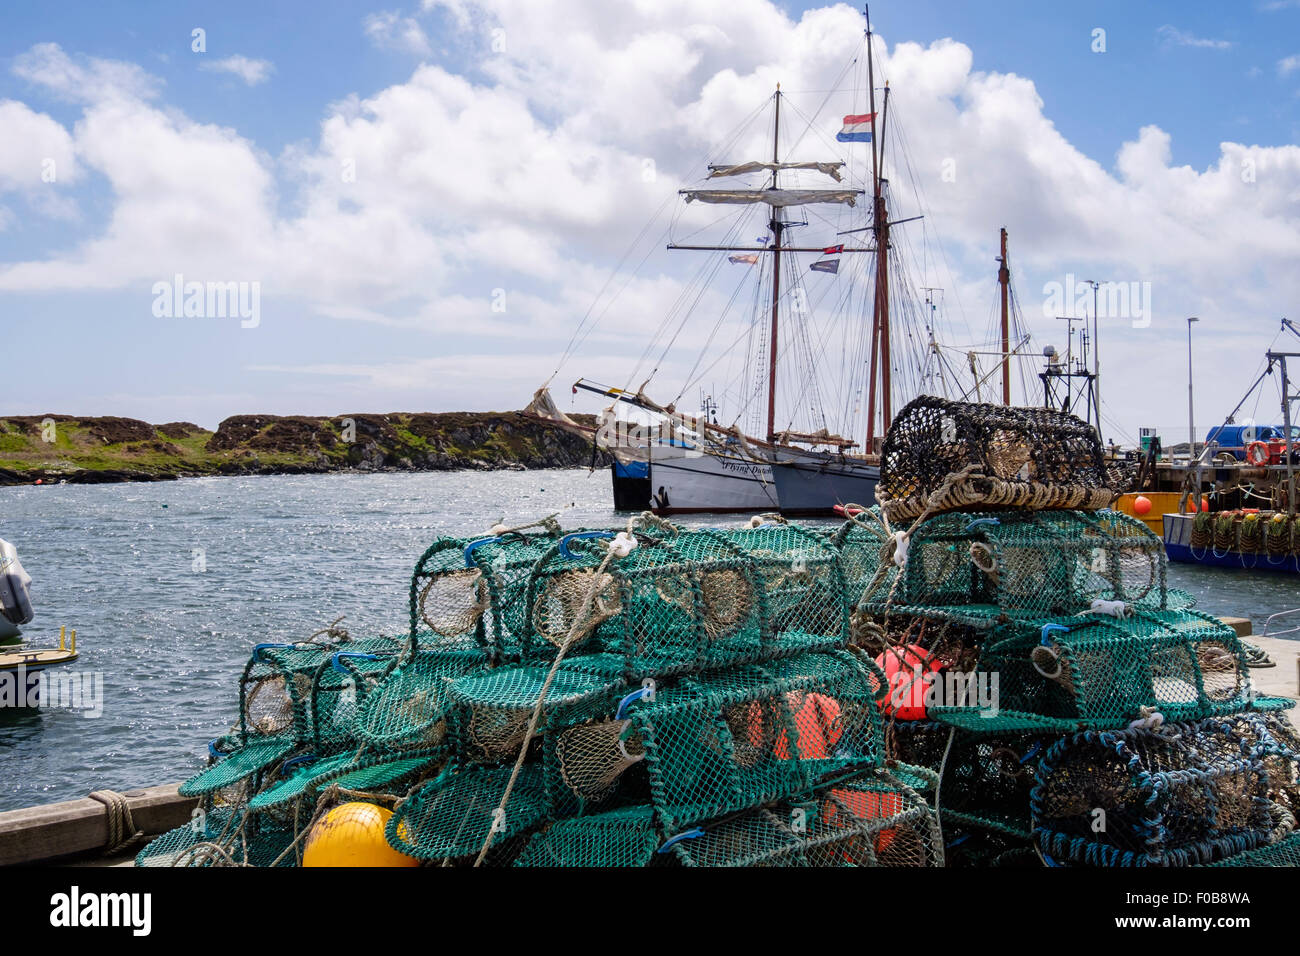 Pots pêche au homard sur le quai au port. Port Ellen (Ilein), l'île d'Islay, Hébrides intérieures, Western Isles, Écosse, Royaume-Uni, Angleterre Banque D'Images